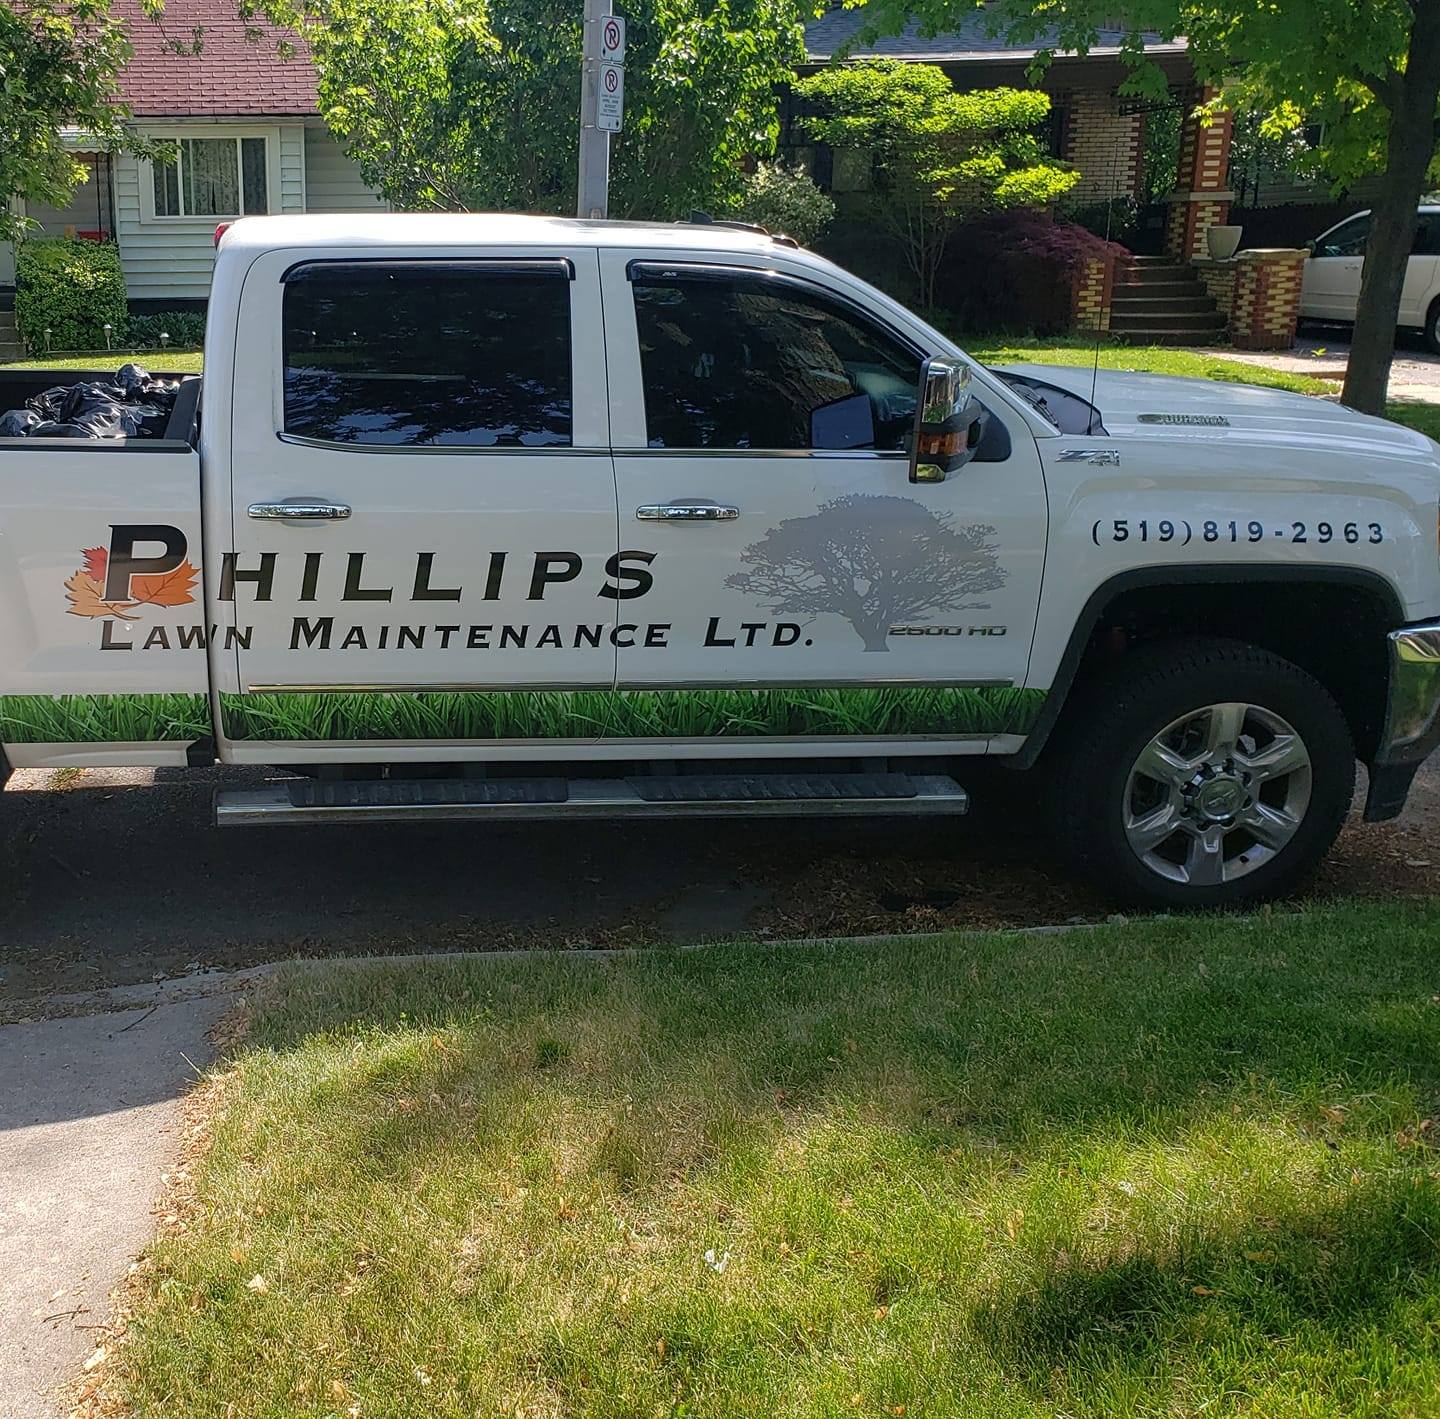 Phillip’s Lawn Maintenance Ltd.